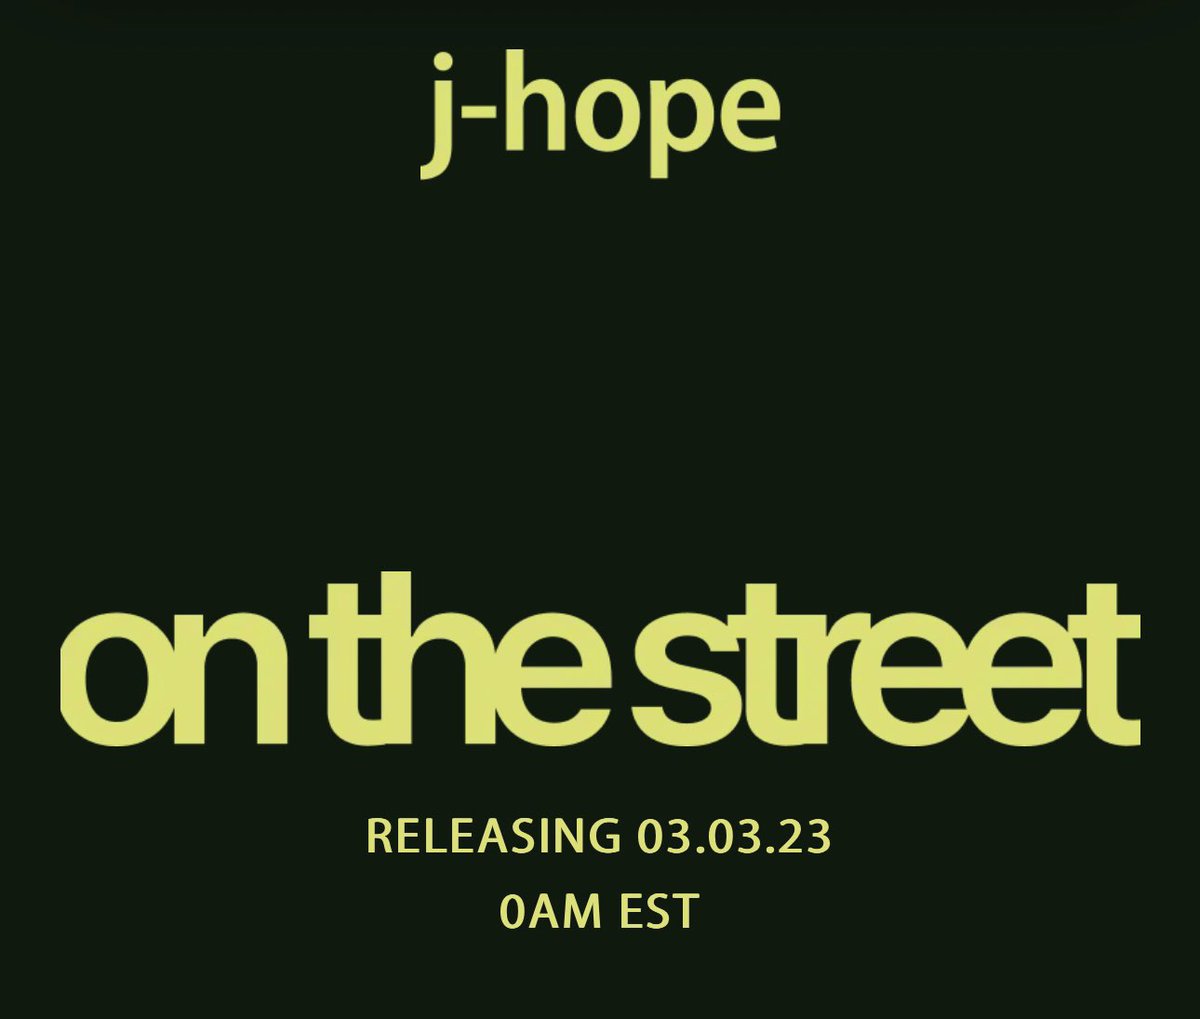 📌 Faça o pre-save de #OnTheStreet do #JHOPE (@BTS_twt) Já sai nessa sexta, B-ARMY! Vamos nos preparar já garantindo o pre-save no single e compartilhando com mais armys #ONTHESTREETBYJHOPE #JHOPE_ON_THE_STREET 🔗 presave.umusic.com/j-hope-on-the-…